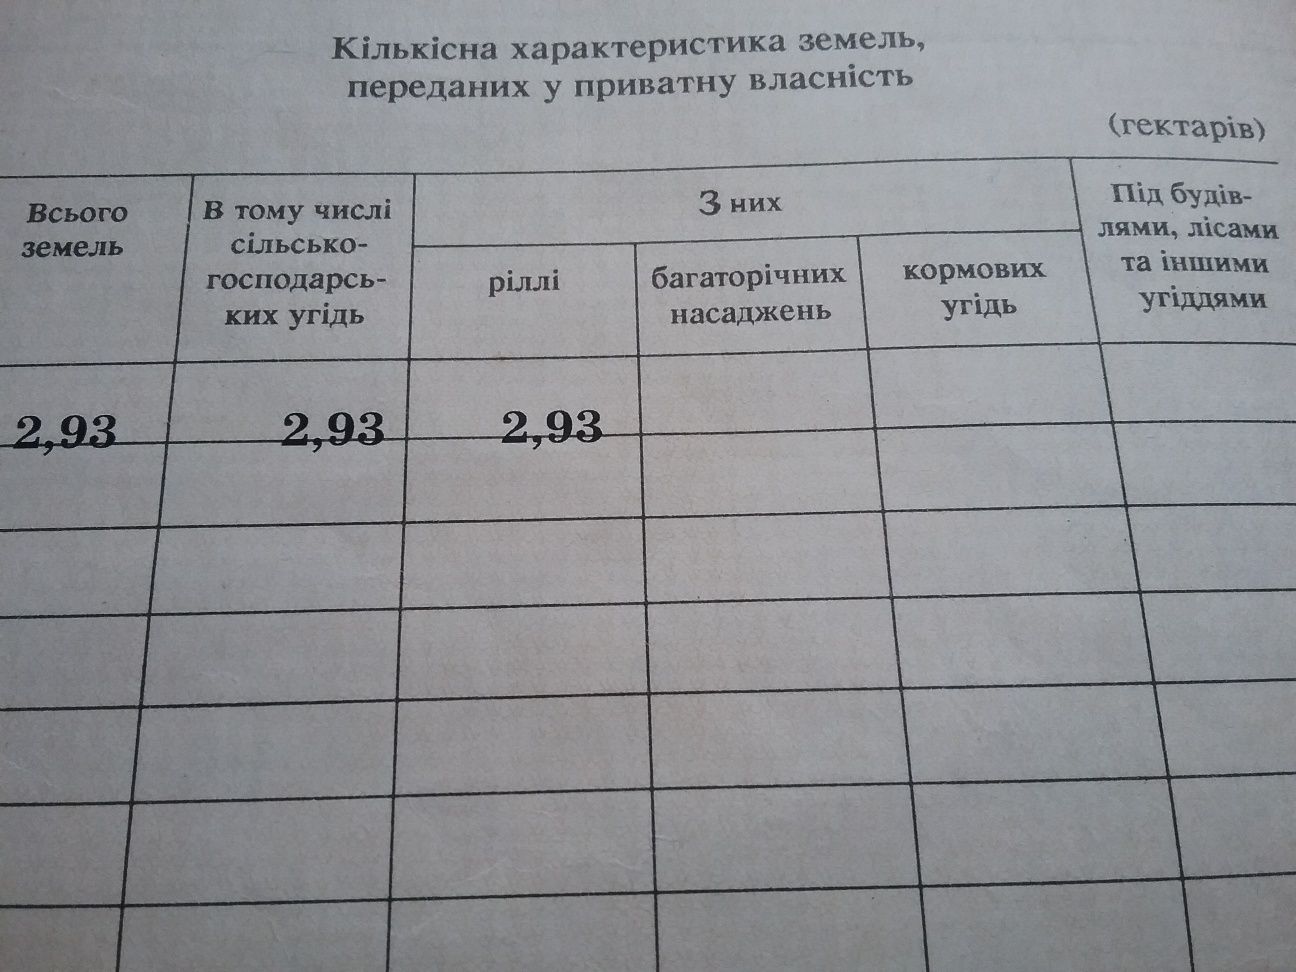 Продажа земельного пая 2.93га,15км от города Кременчуг Полтавской обл.